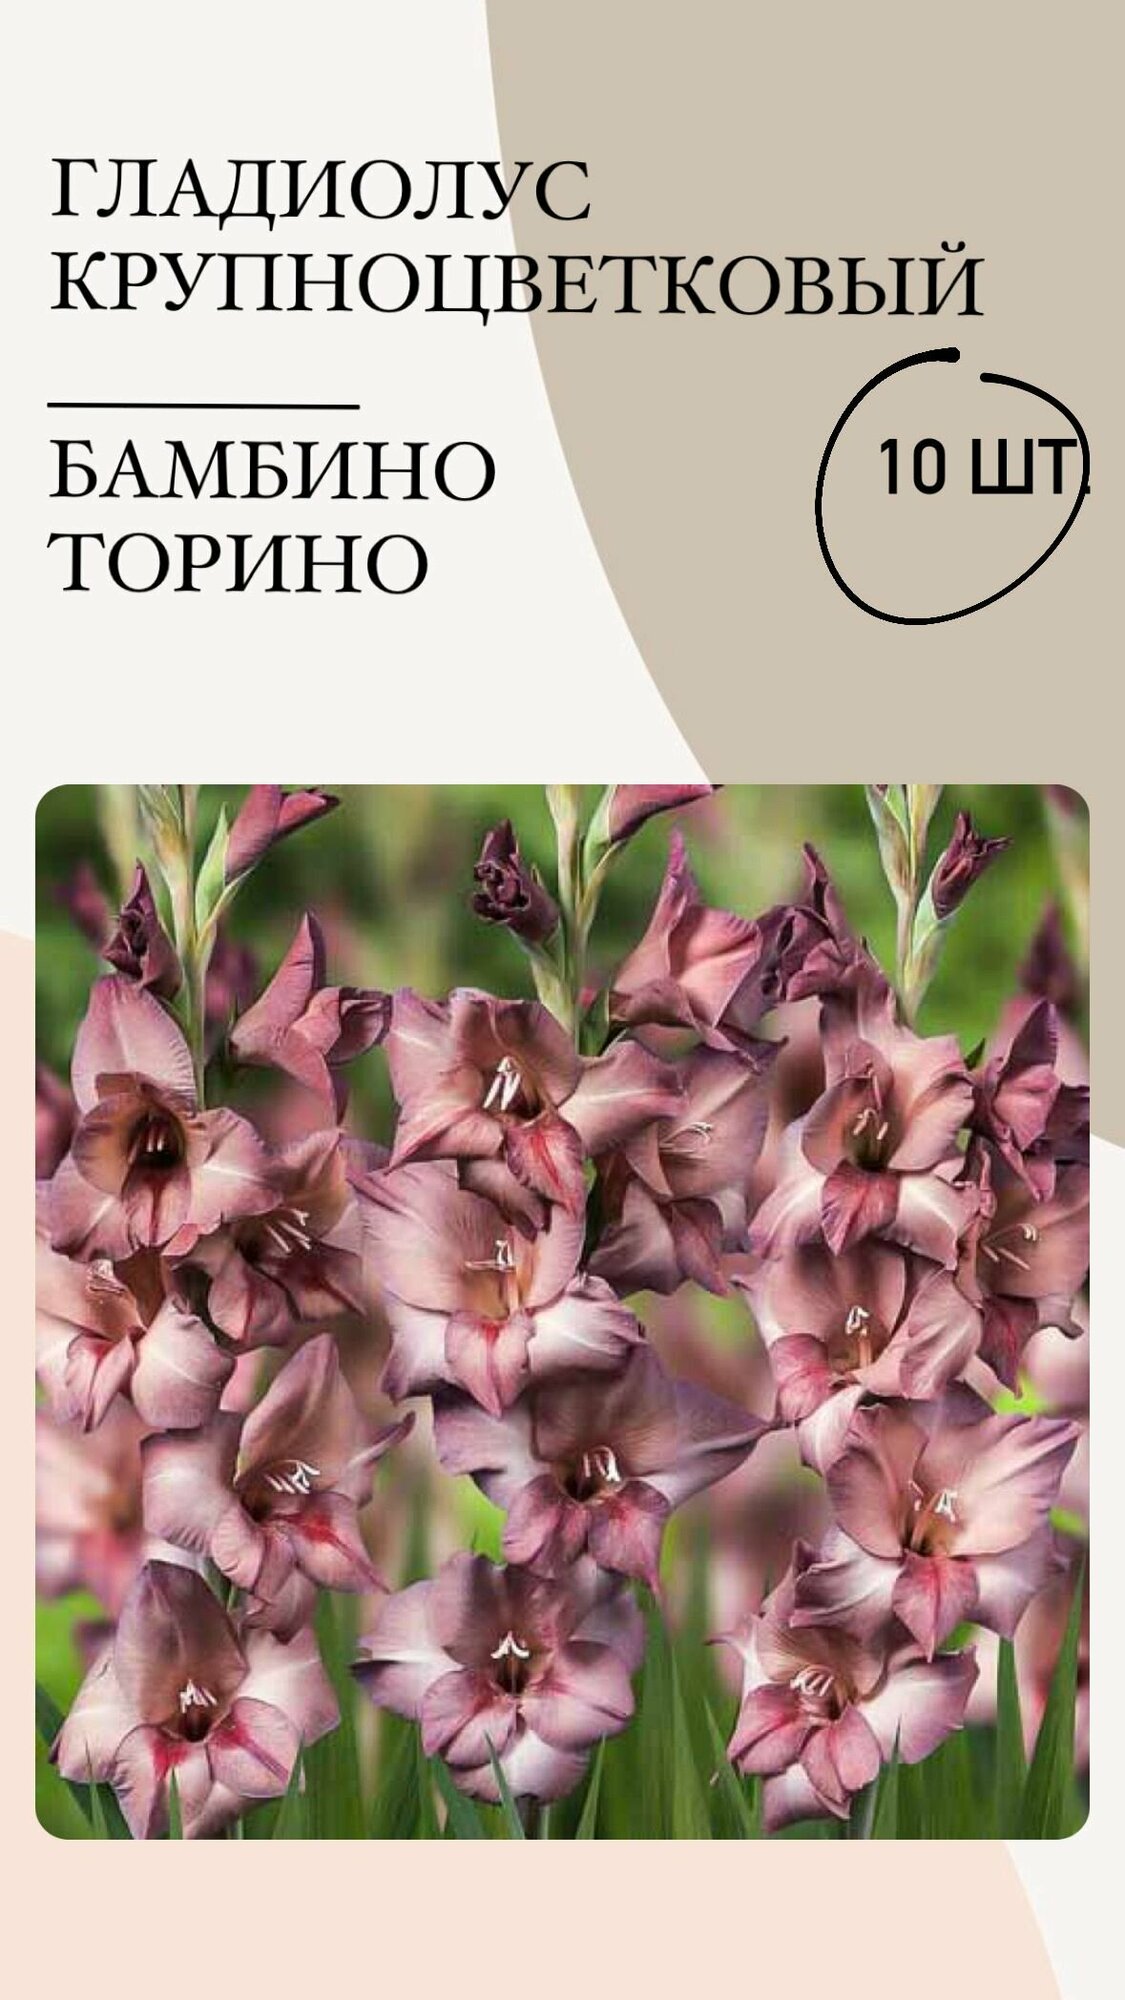 Гладиолус крупноцветковый Бамбино Торино, луковицы многолетних цветов